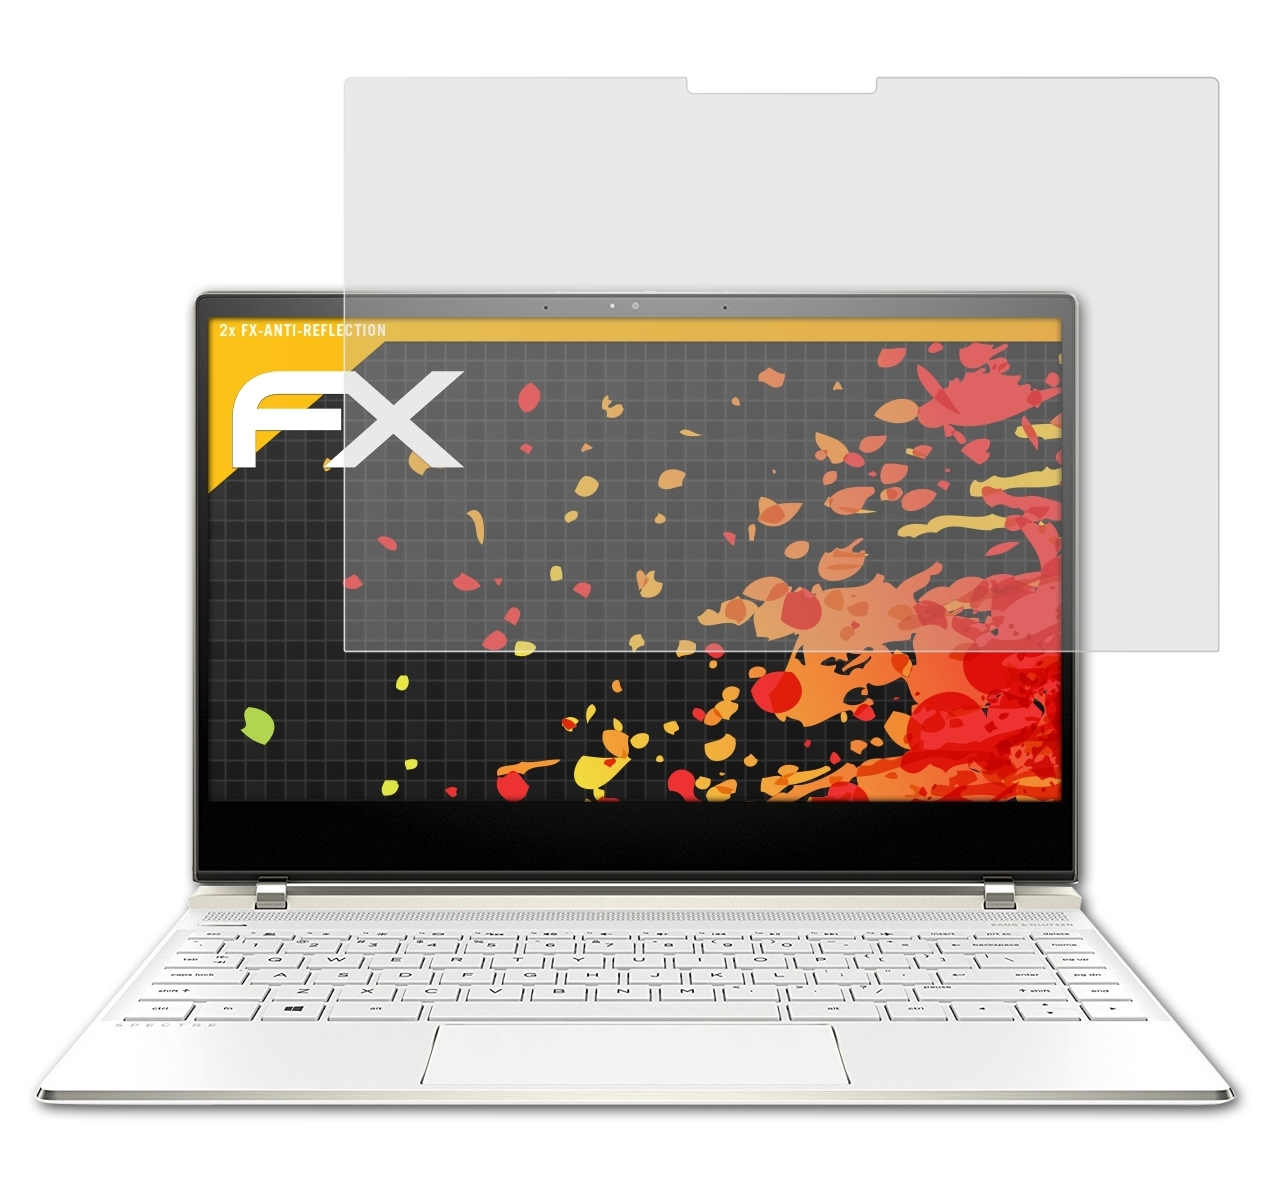 ATFOLIX 2x FX-Antireflex 13-af033ng) Displayschutz(für Spectre HP